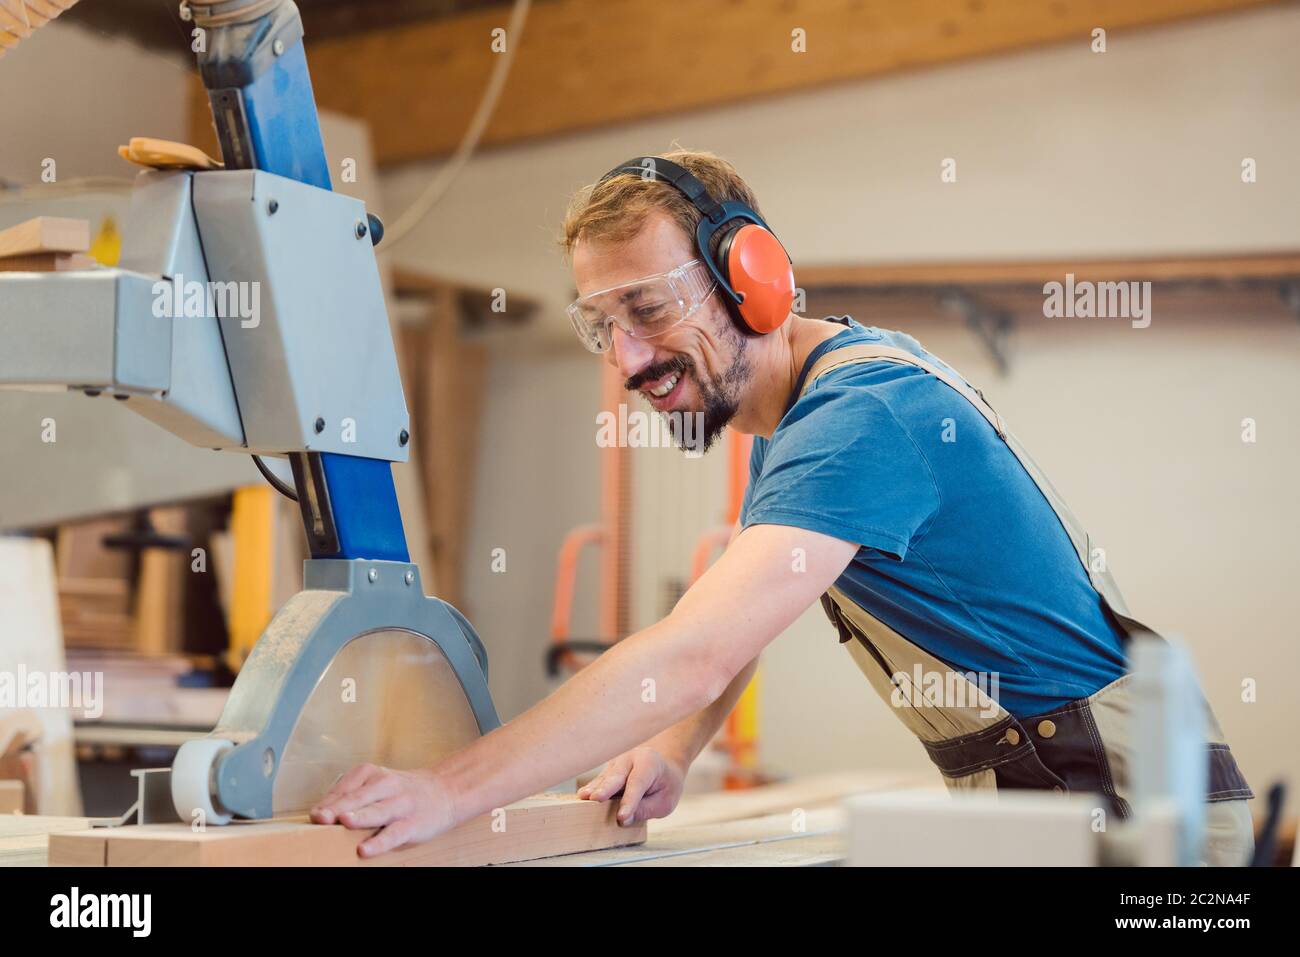 Carpintero diligente con diversión en el trabajo aserrando un pedazo de madera Foto de stock